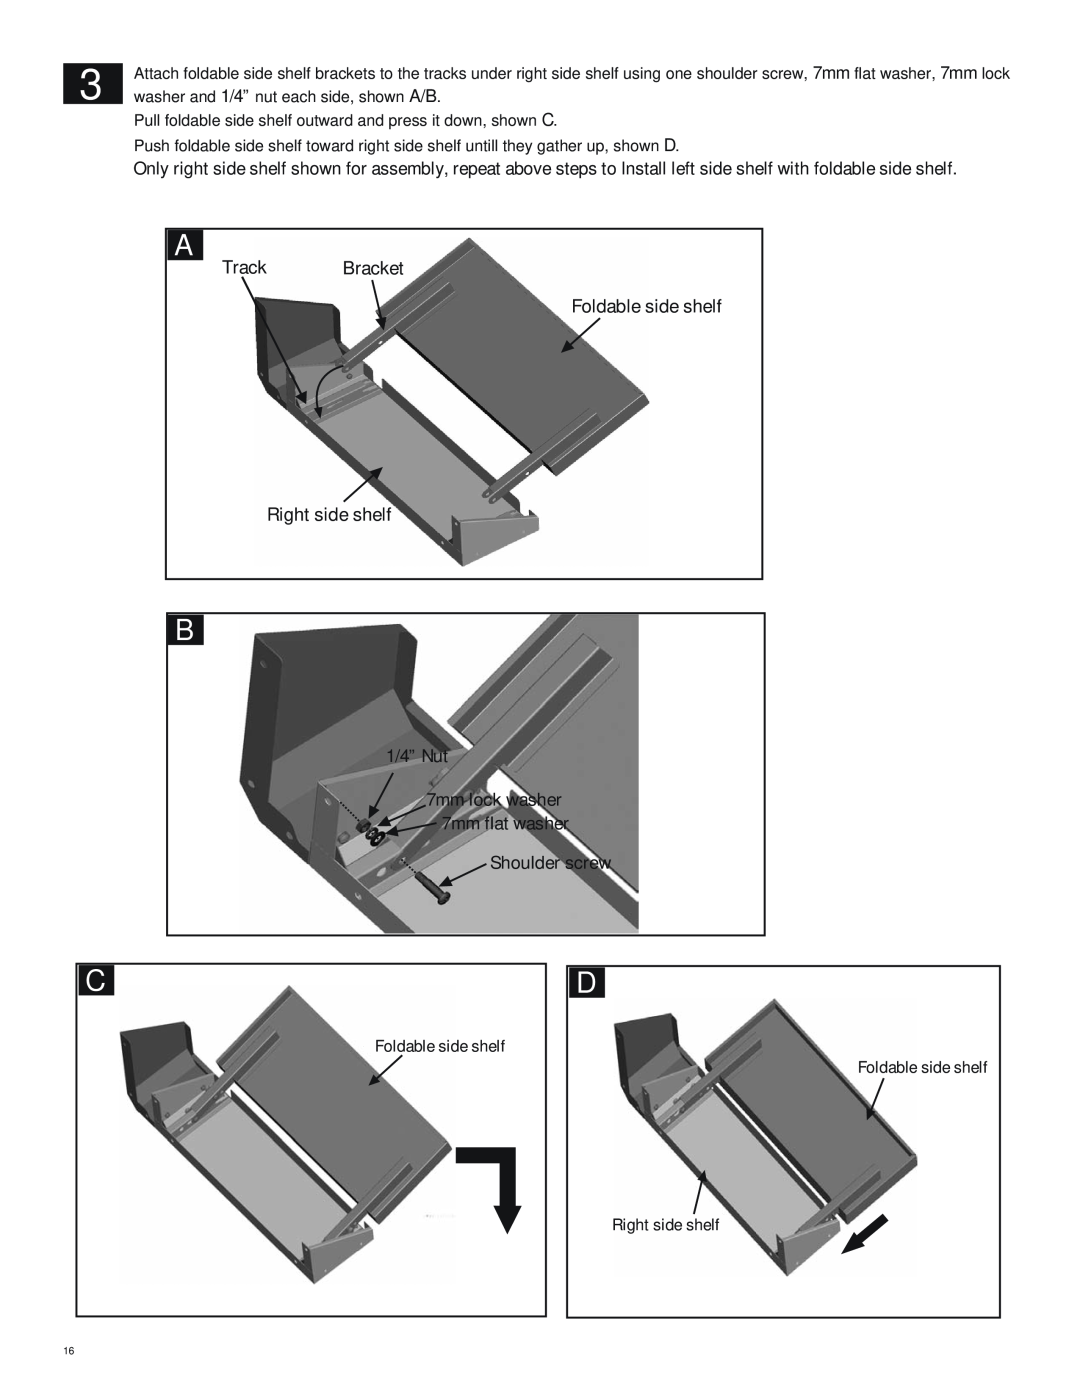 Char-Broil 463262911 manual Track Bracket Foldable side shelf Right side shelf, 1/4” Nut, Shoulder screw 